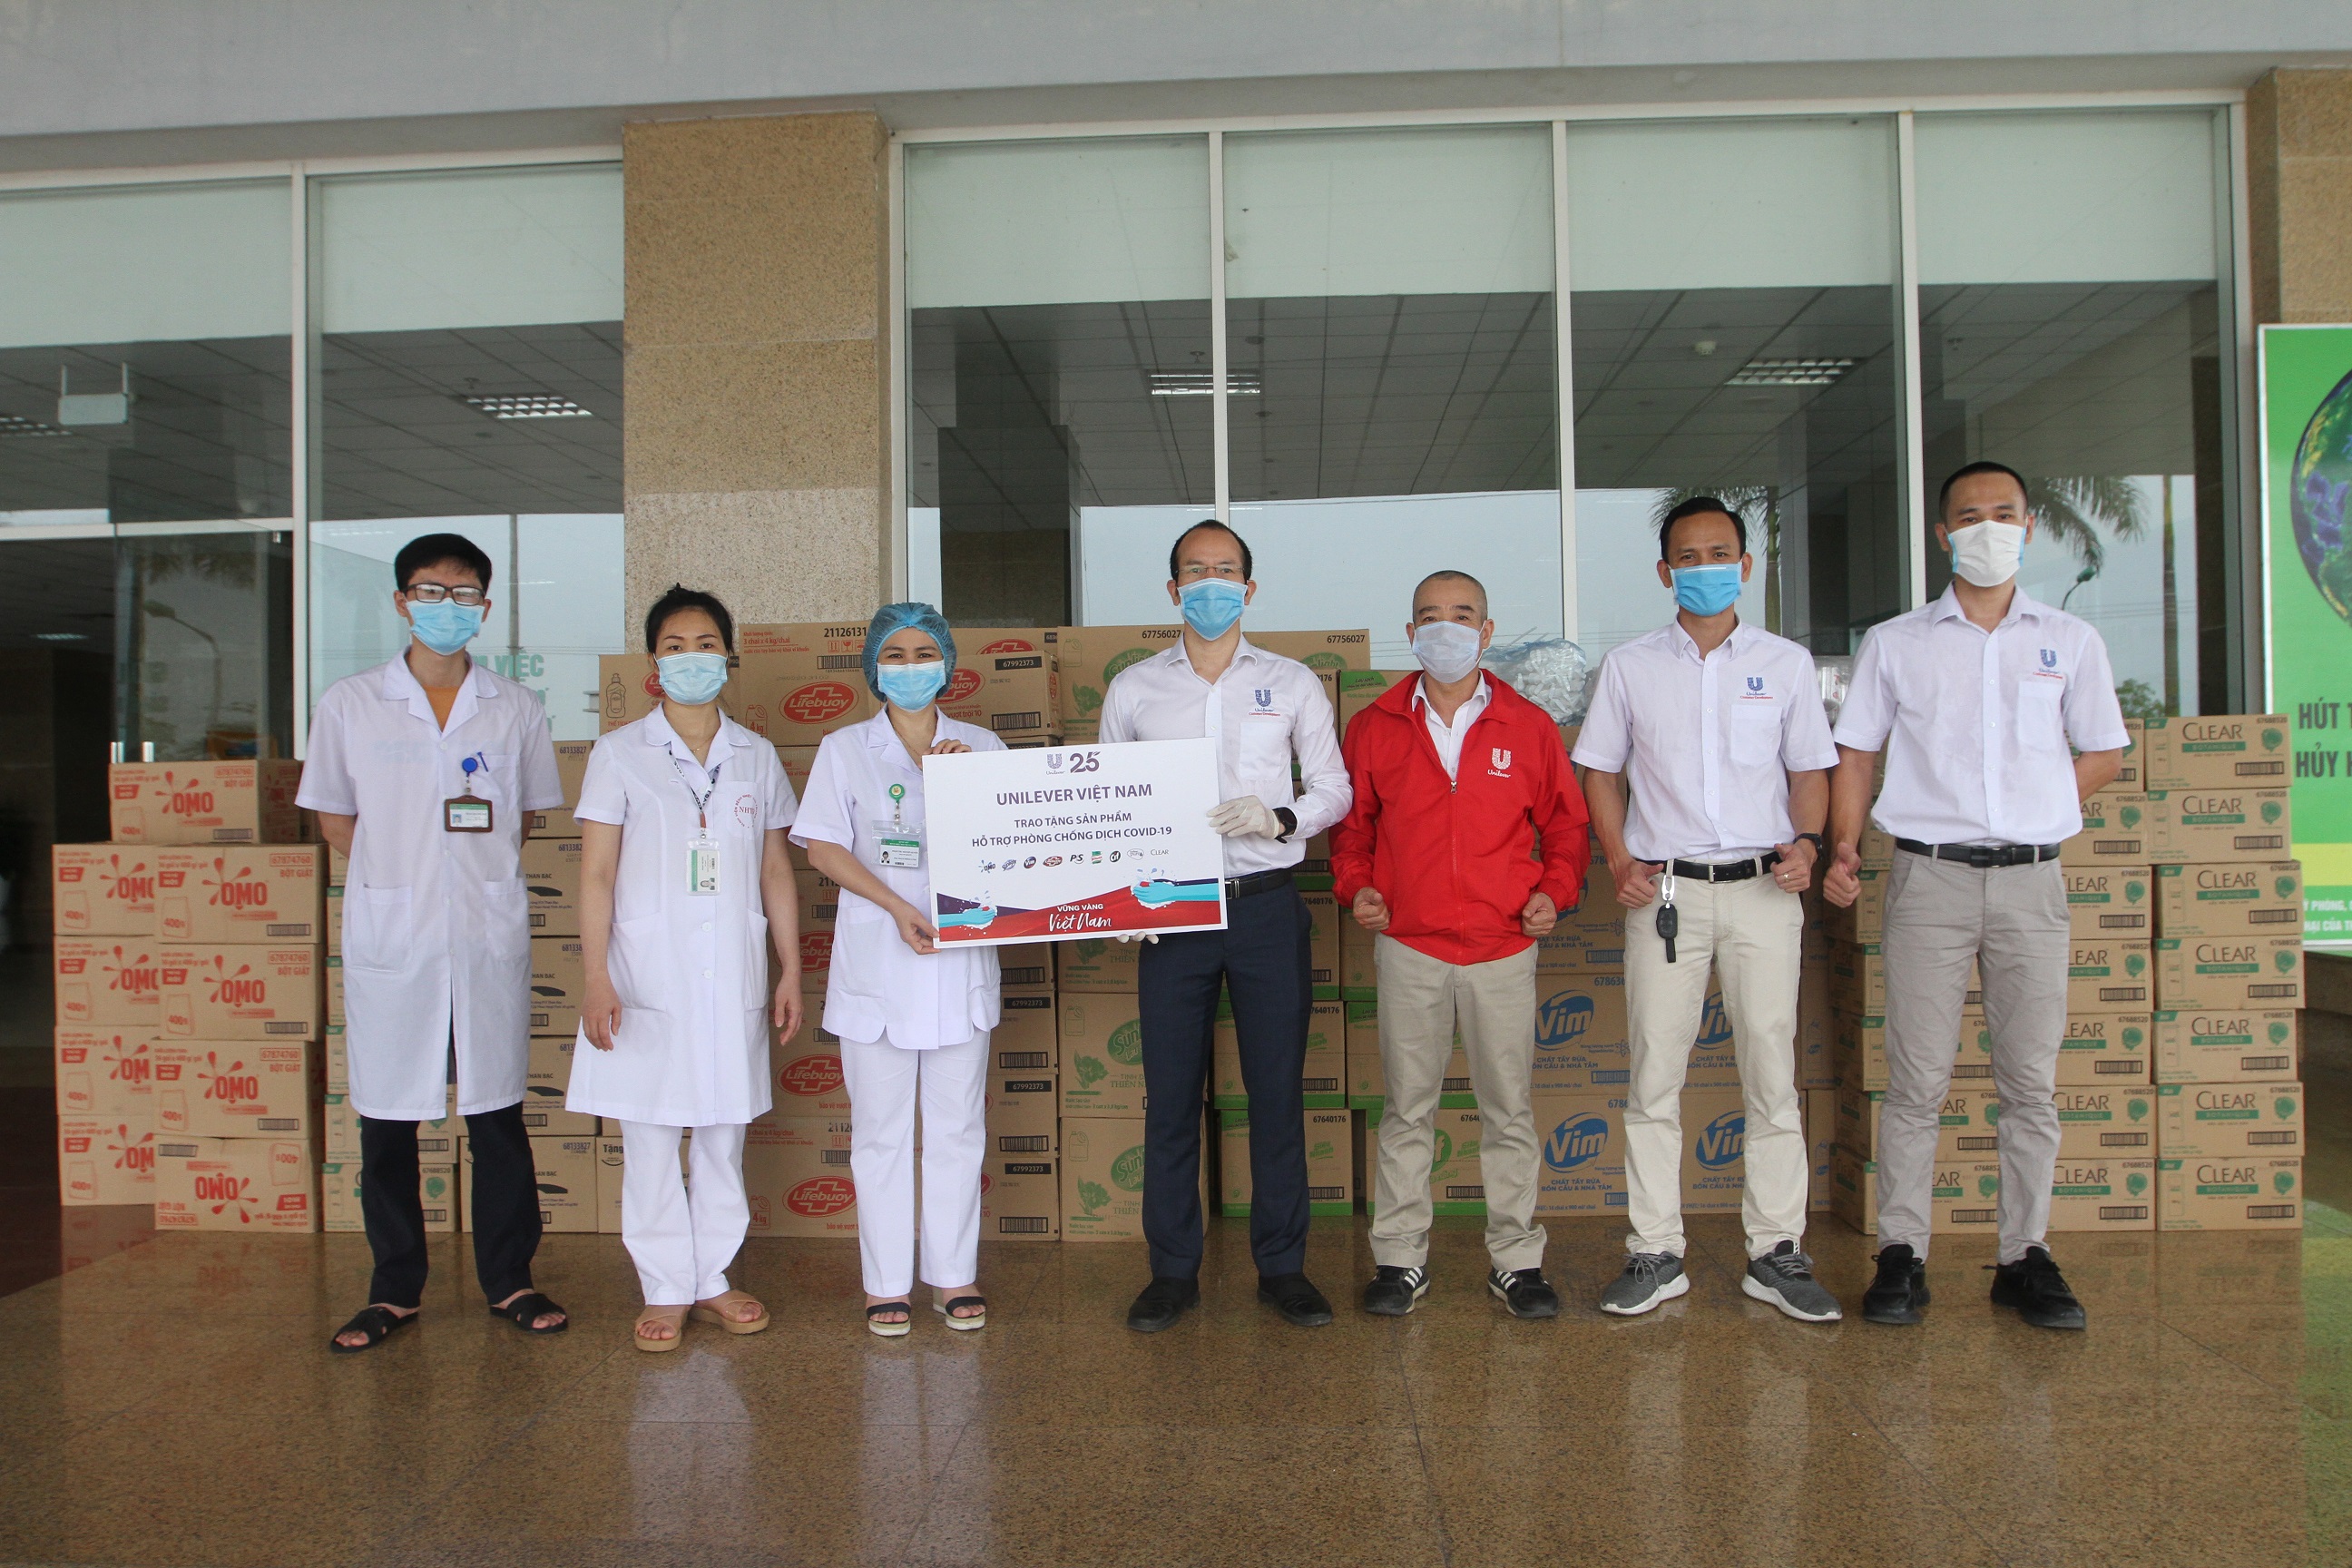 Đại diện Unilever trao tặng sản phẩm hỗ trợ bệnh viện và các cơ sở y tế trong chiến dịch “Vững vàng Việt Nam” năm 2020